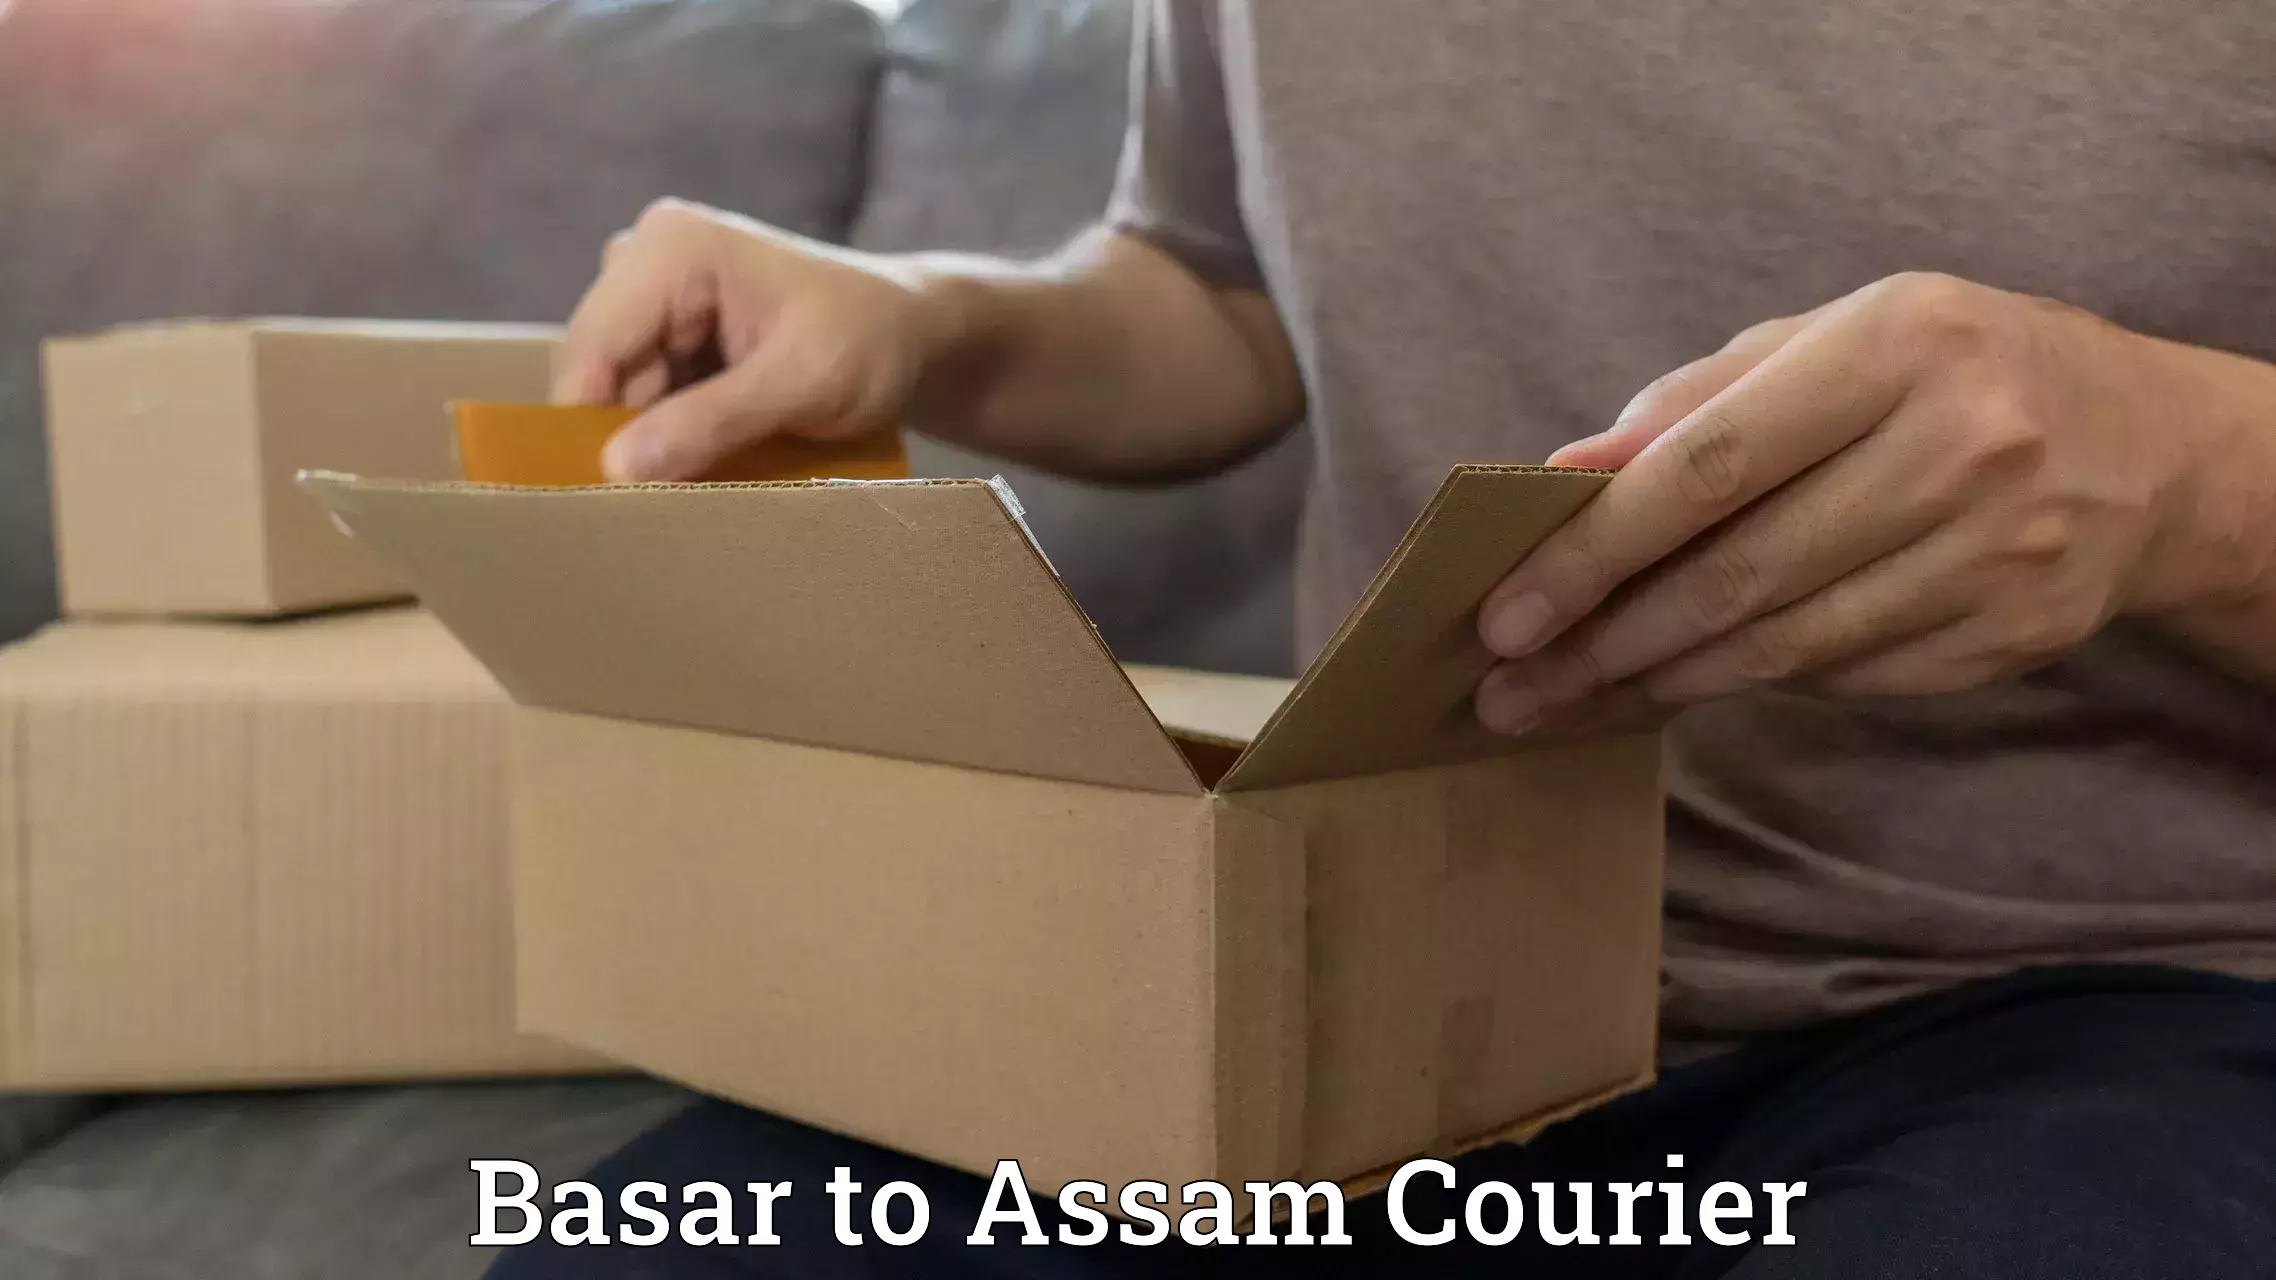 On-call courier service Basar to Barpeta